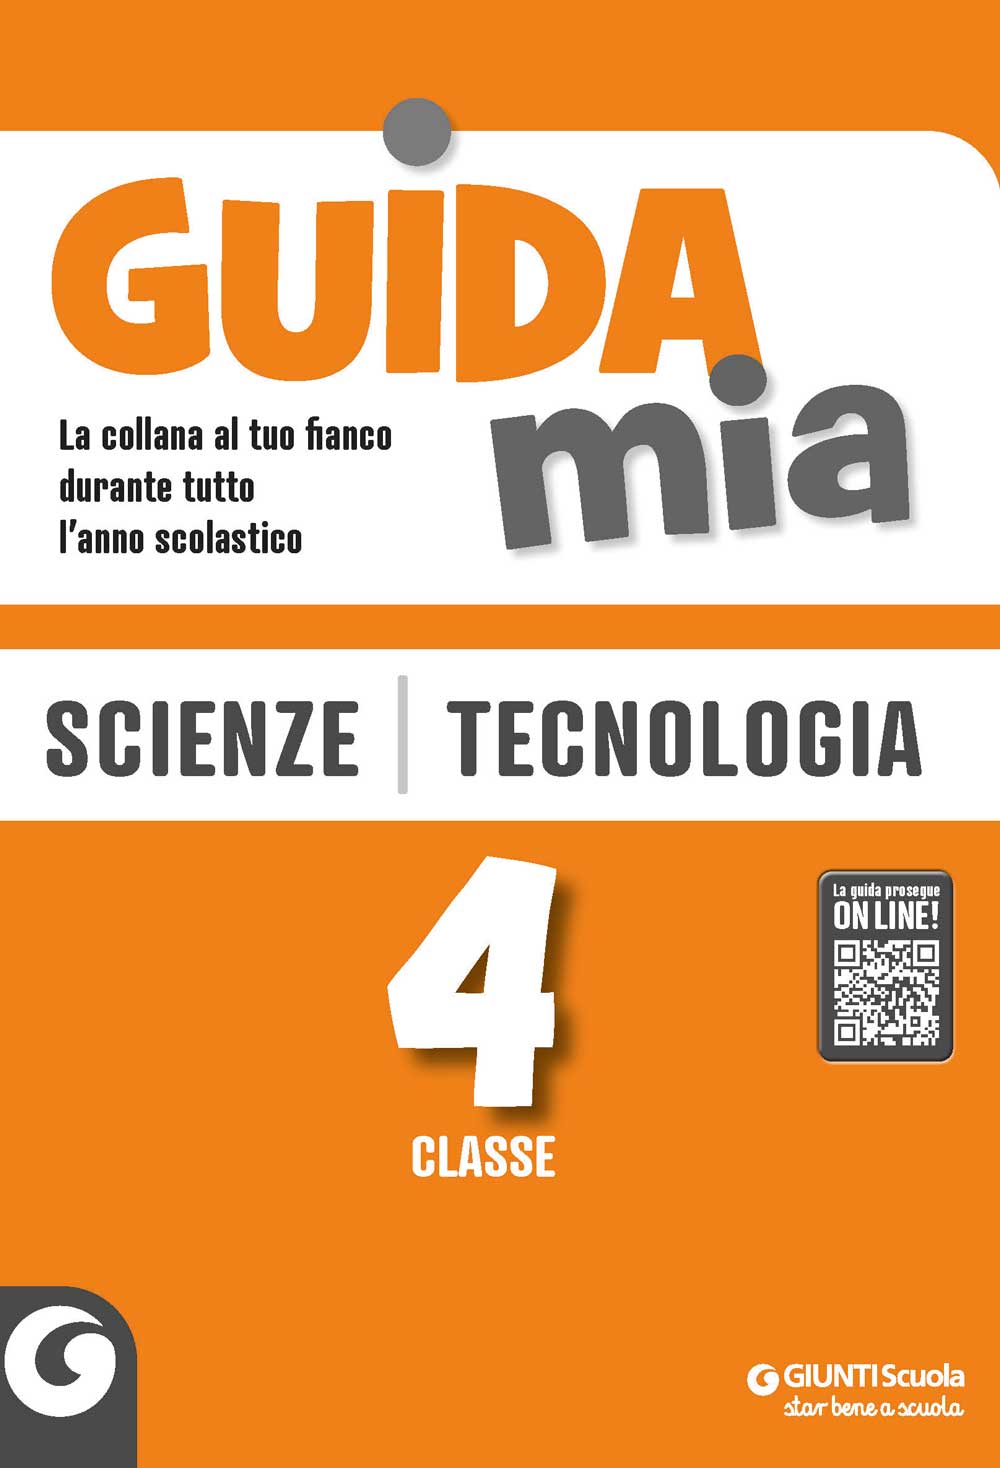 Guida Mia - Scienze e Tecnologia classe 4 | Giunti Scuola